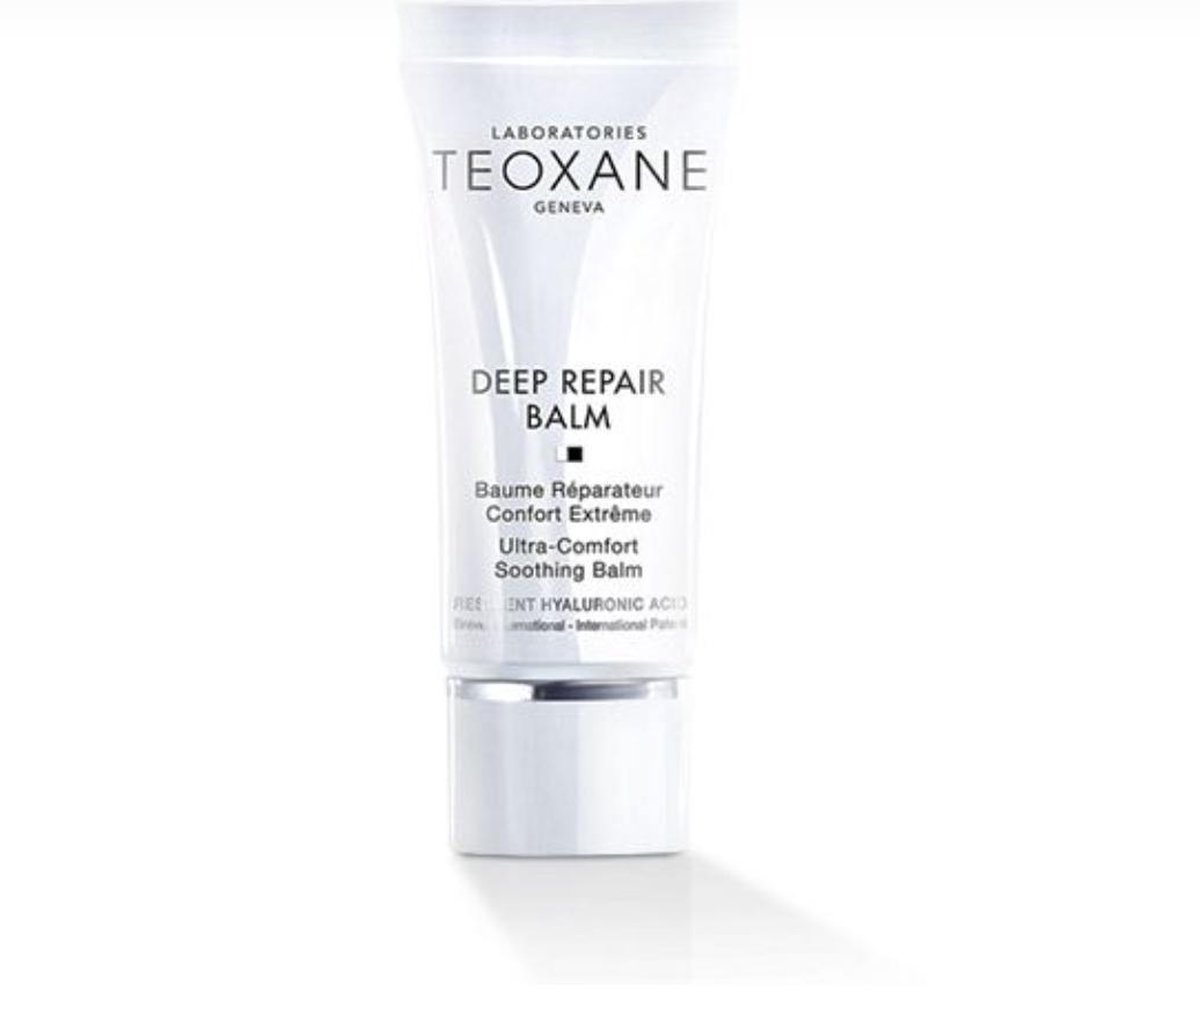 Teoxane deep repair balm